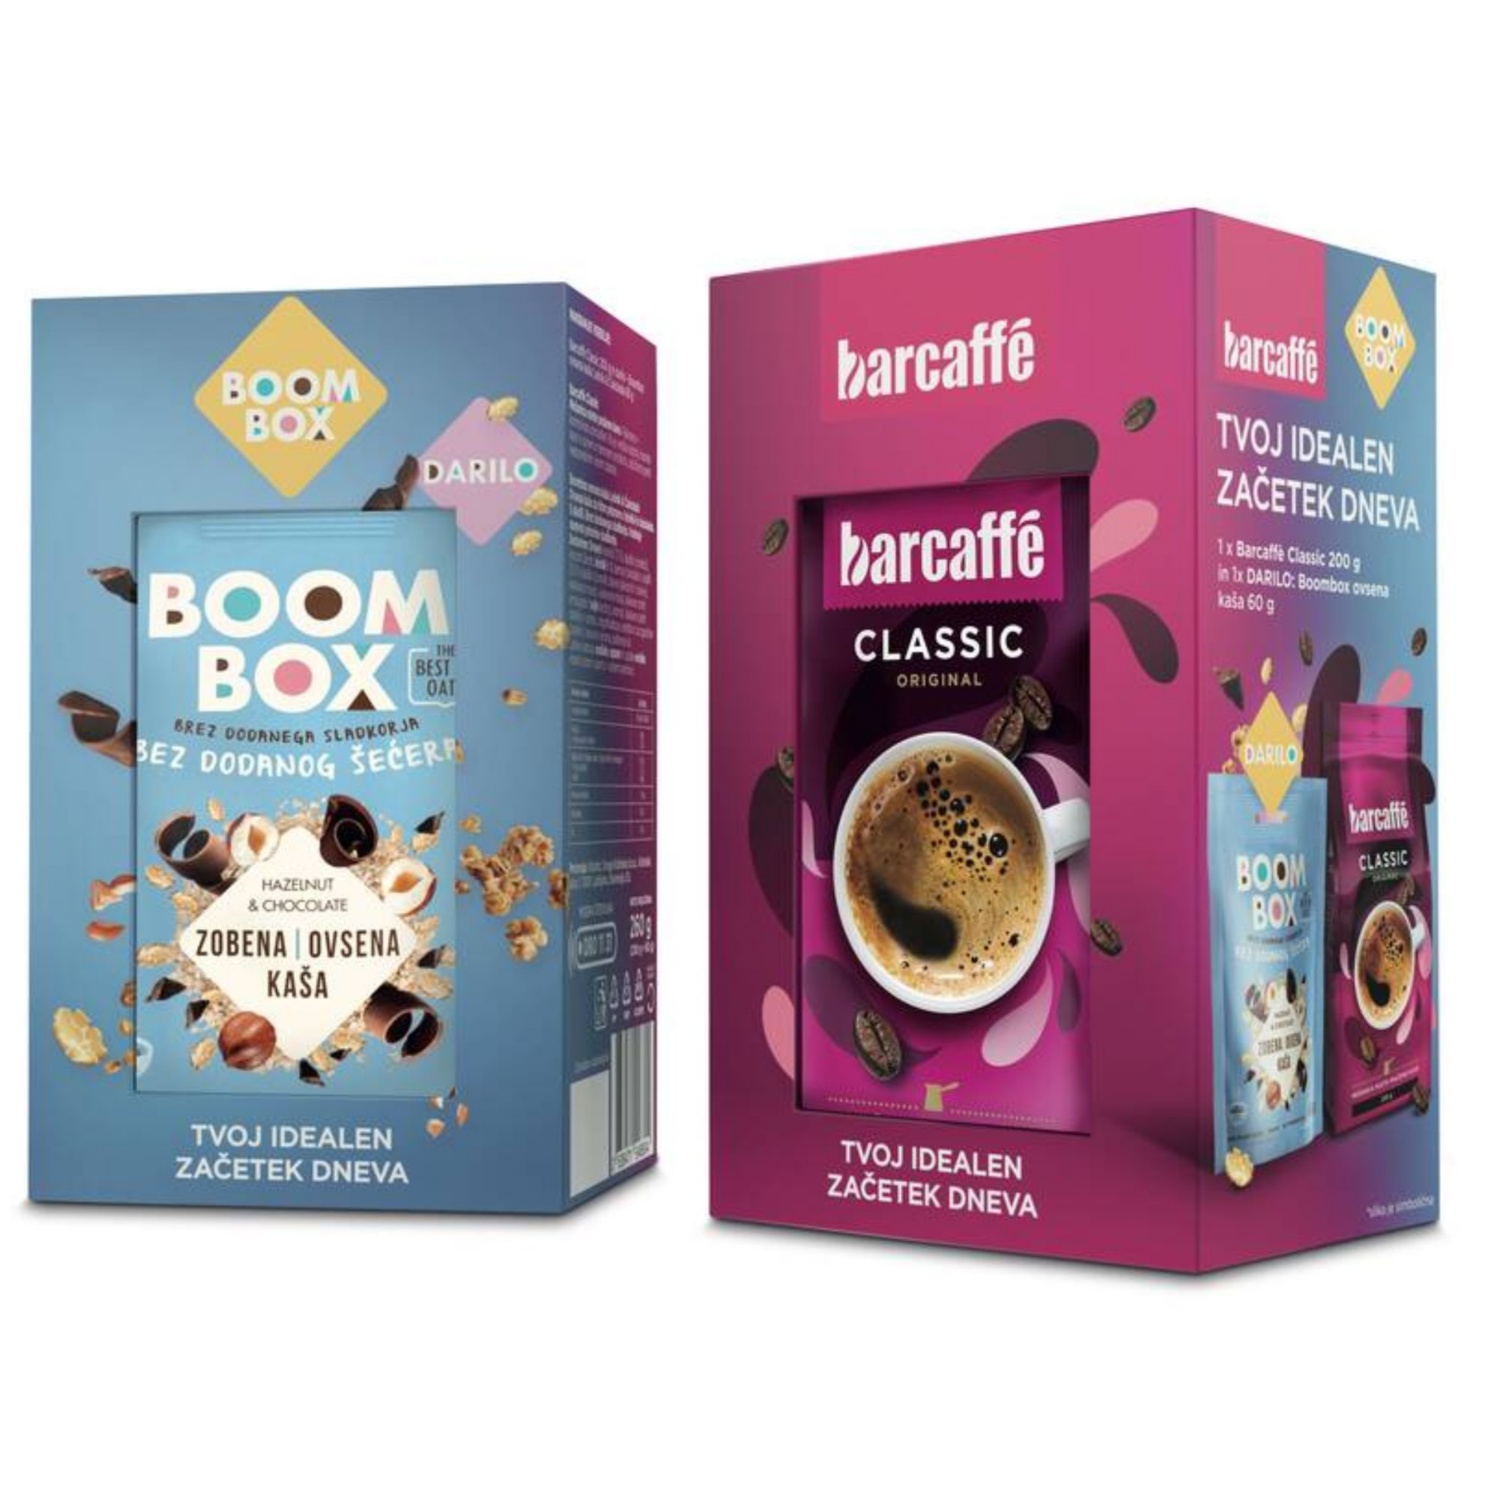 BARCAFFE Barcaffe in Boom Box